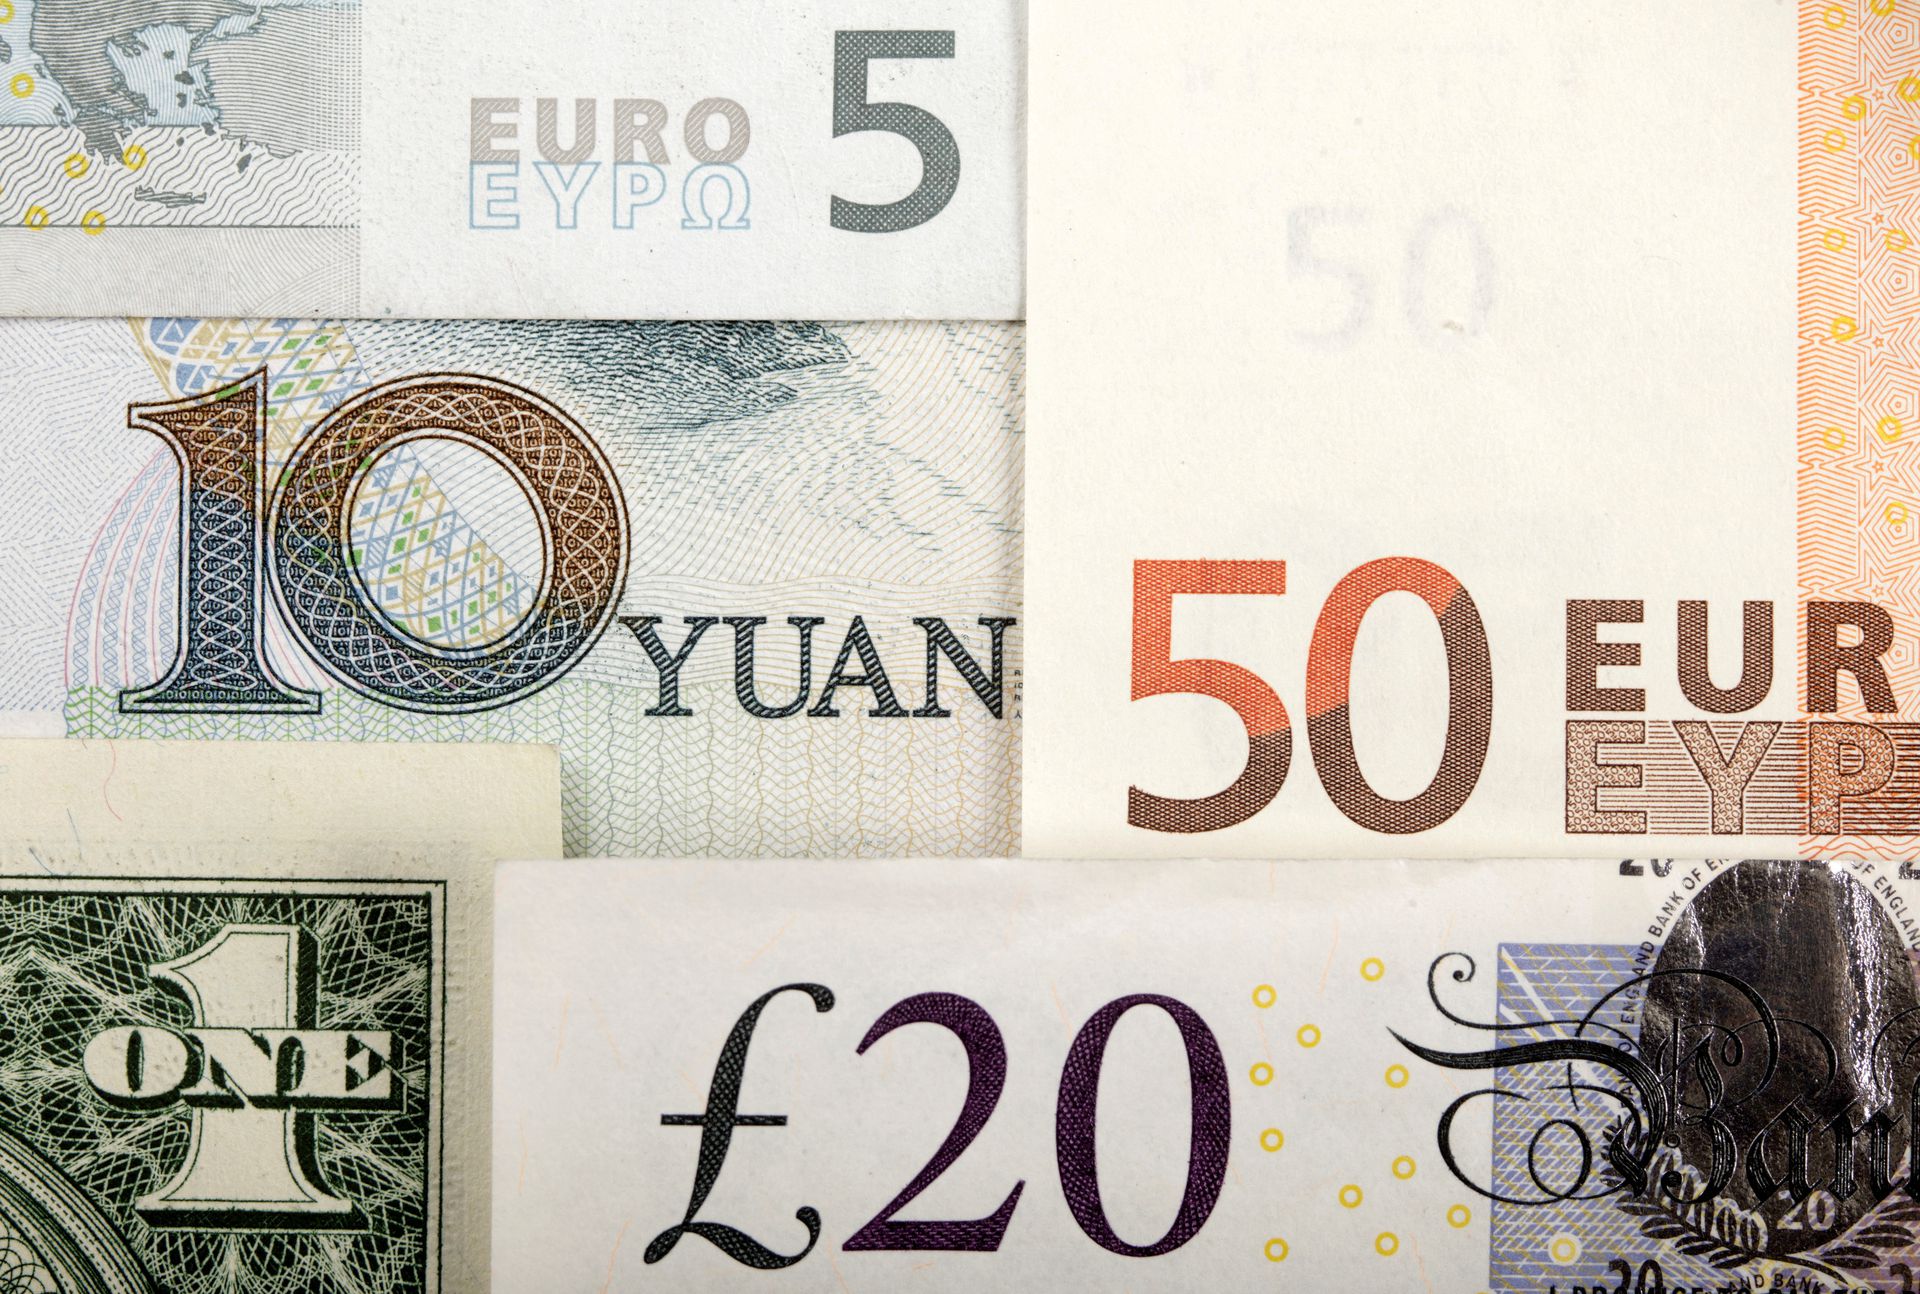 白羅斯擬年底與部份貿易夥伴放棄美元和歐元結算